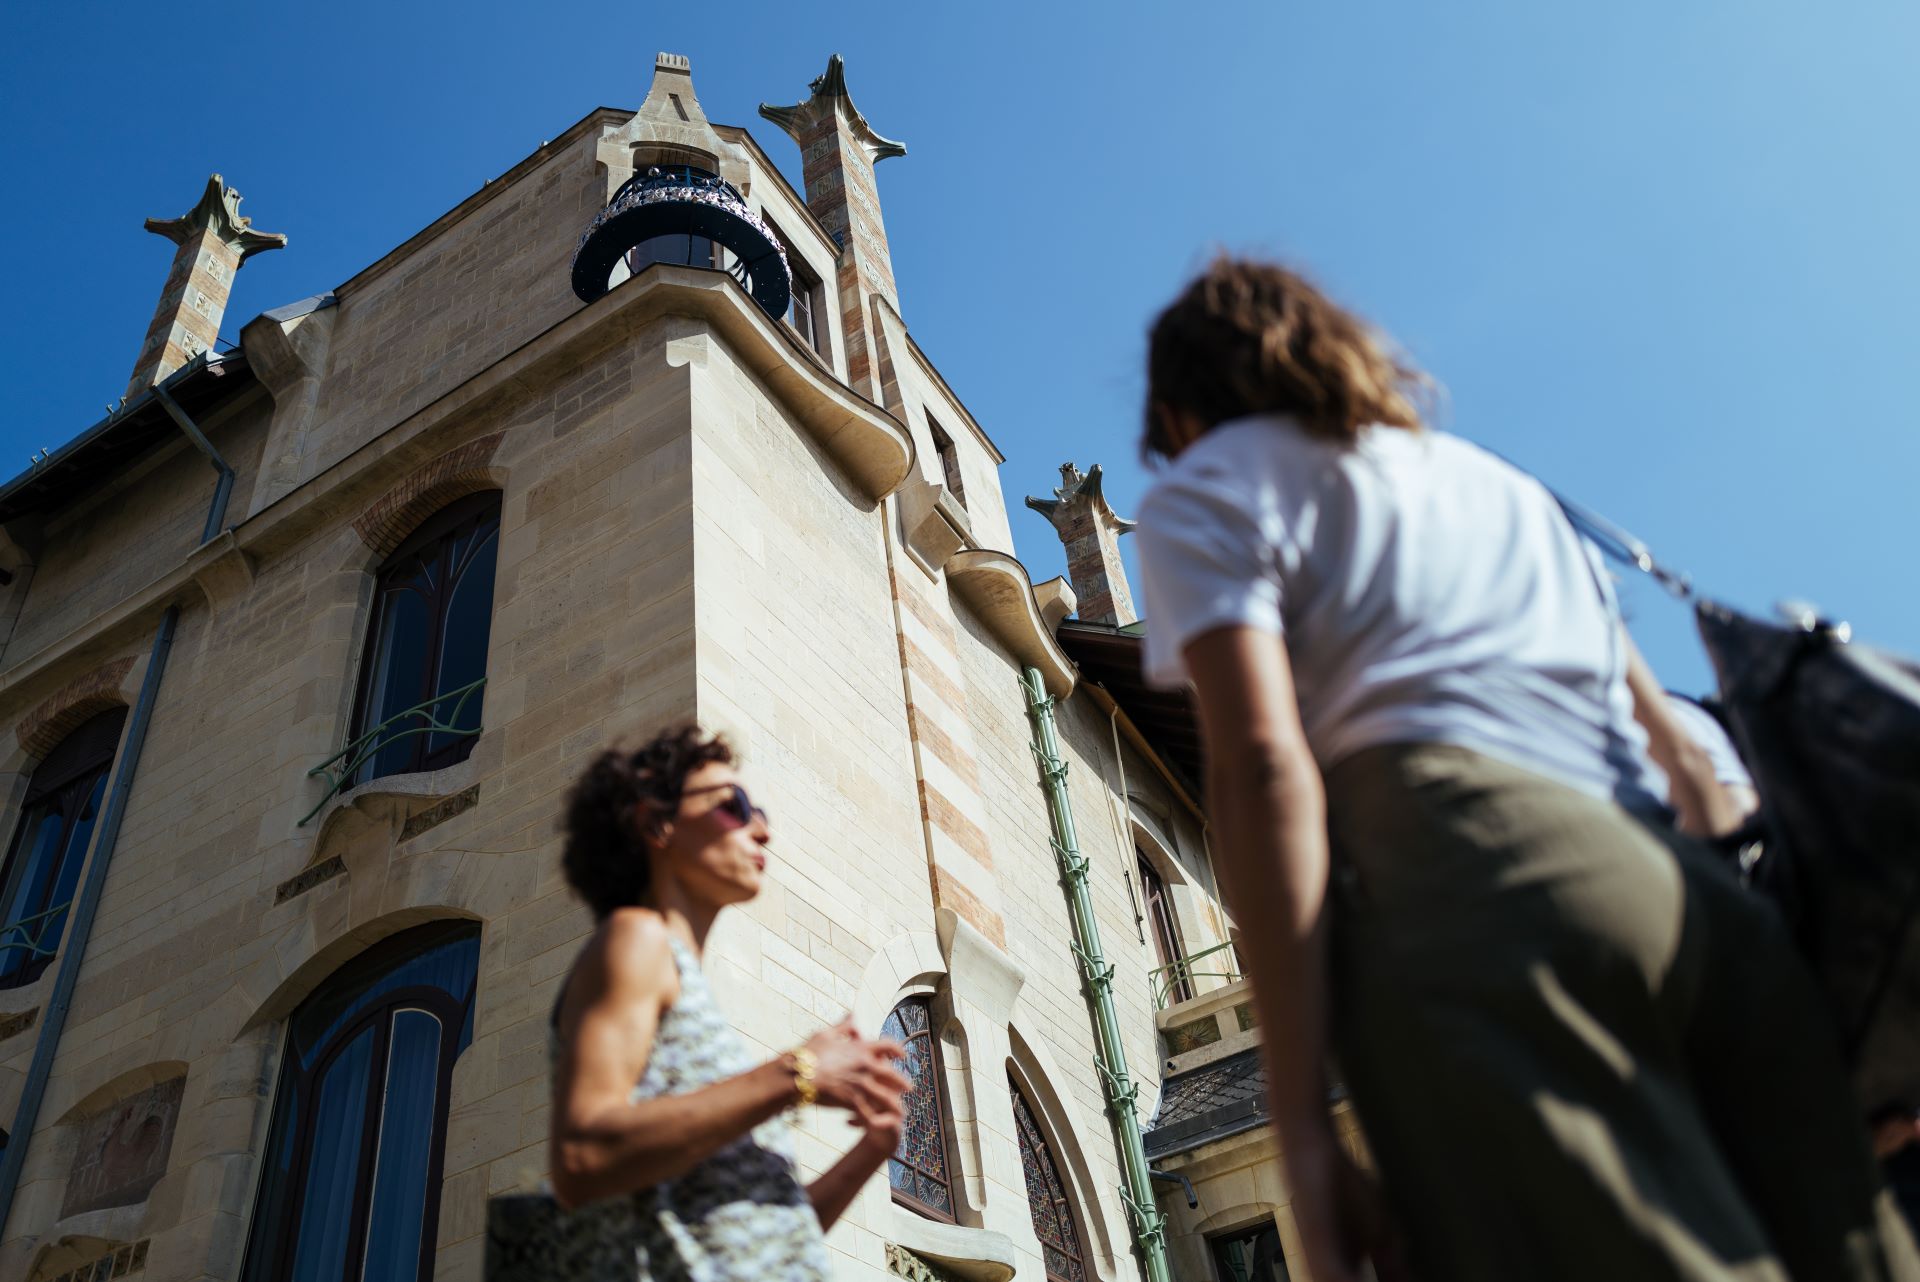 Draußen erklärt die Reiseleiterin ihren Gästen vor einem historischen Gebäude etwas.